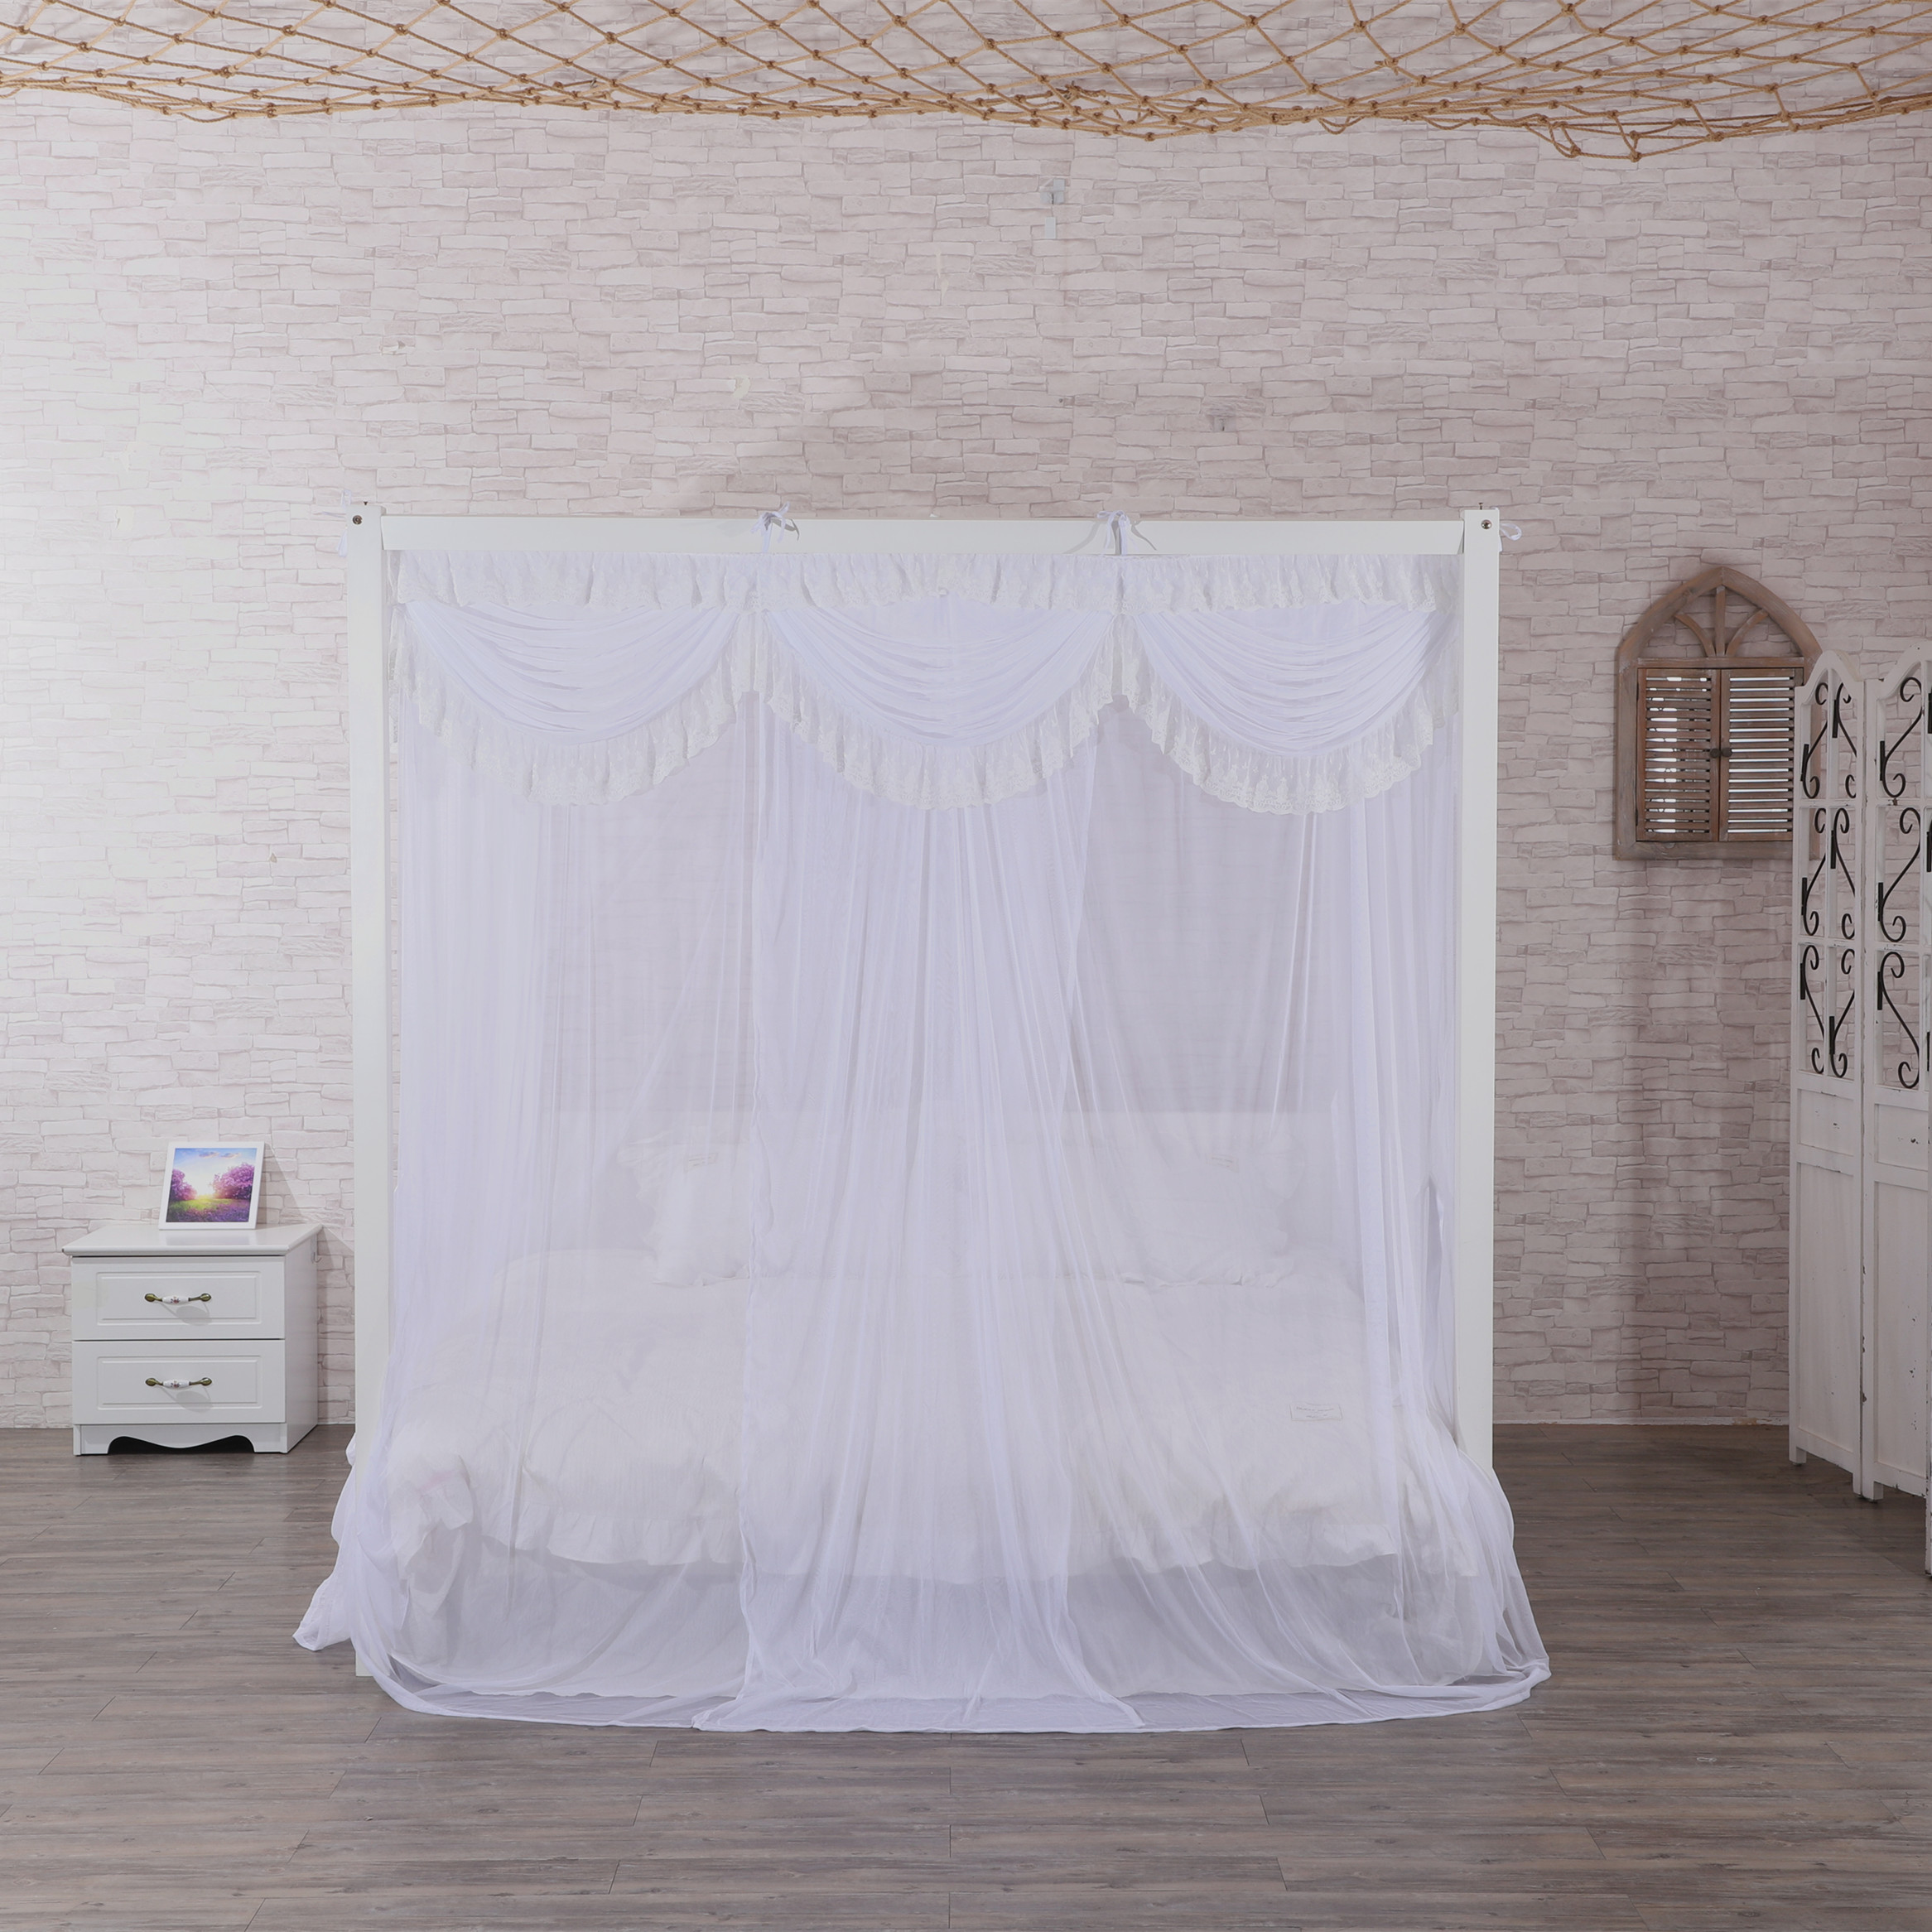 Nuevo diseño estilo princesa hermoso dosel de encaje malla interior decoración del hogar red rey cama tamaño queen forma cuadrada mosquitera